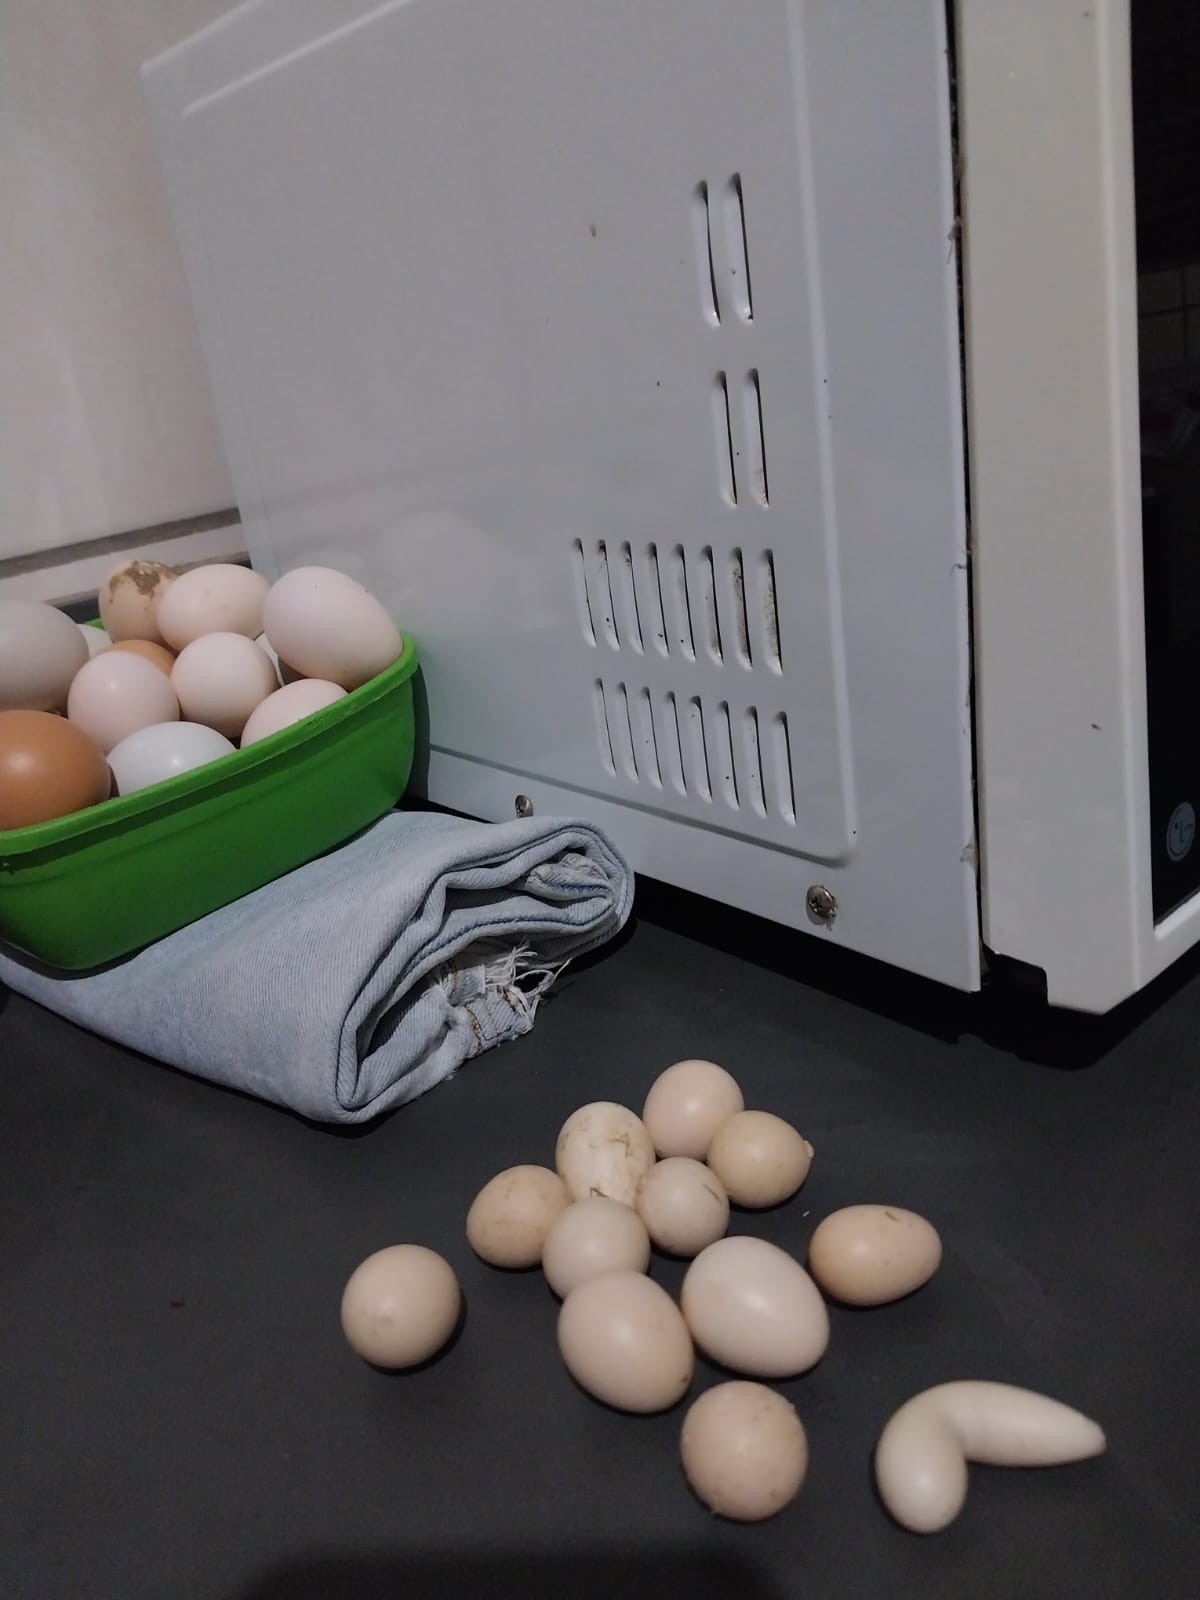 Preço do ovo de galinha sobe quase 19% nos últimos 12 meses, Jornal  Nacional